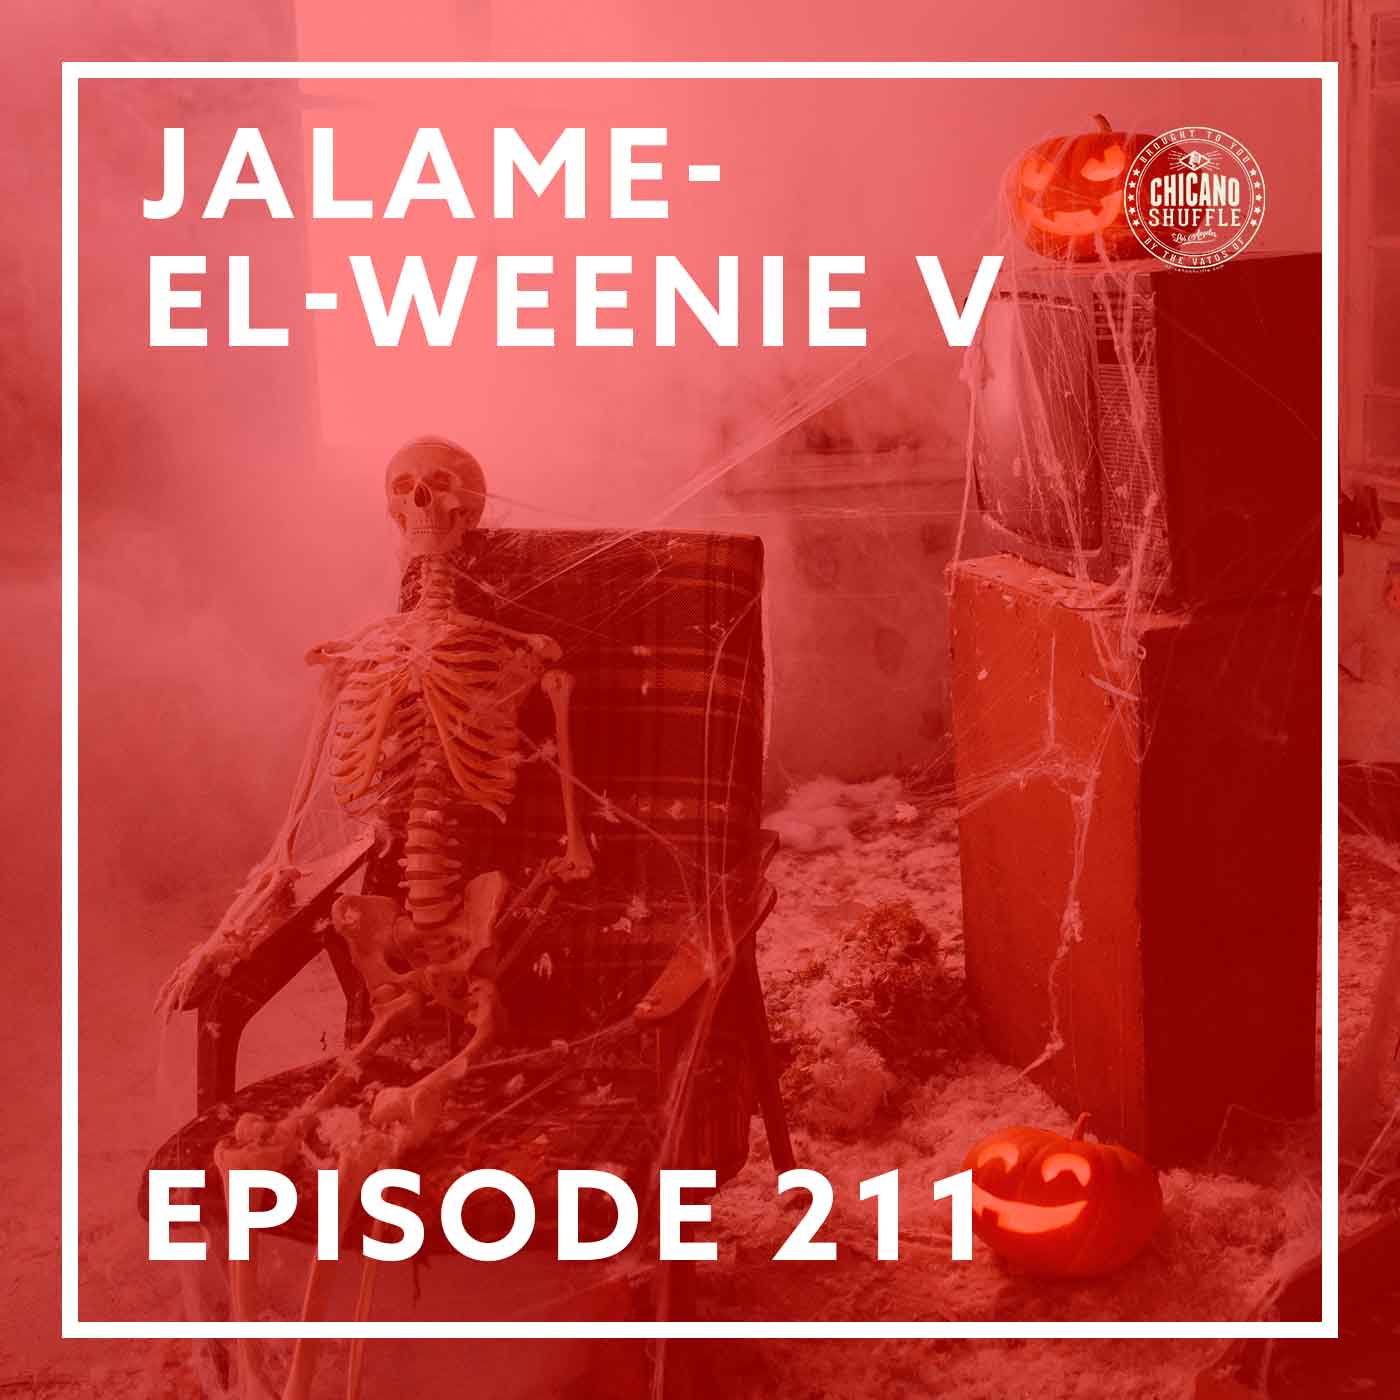 Episode 211 – Jalame-el-weenie V